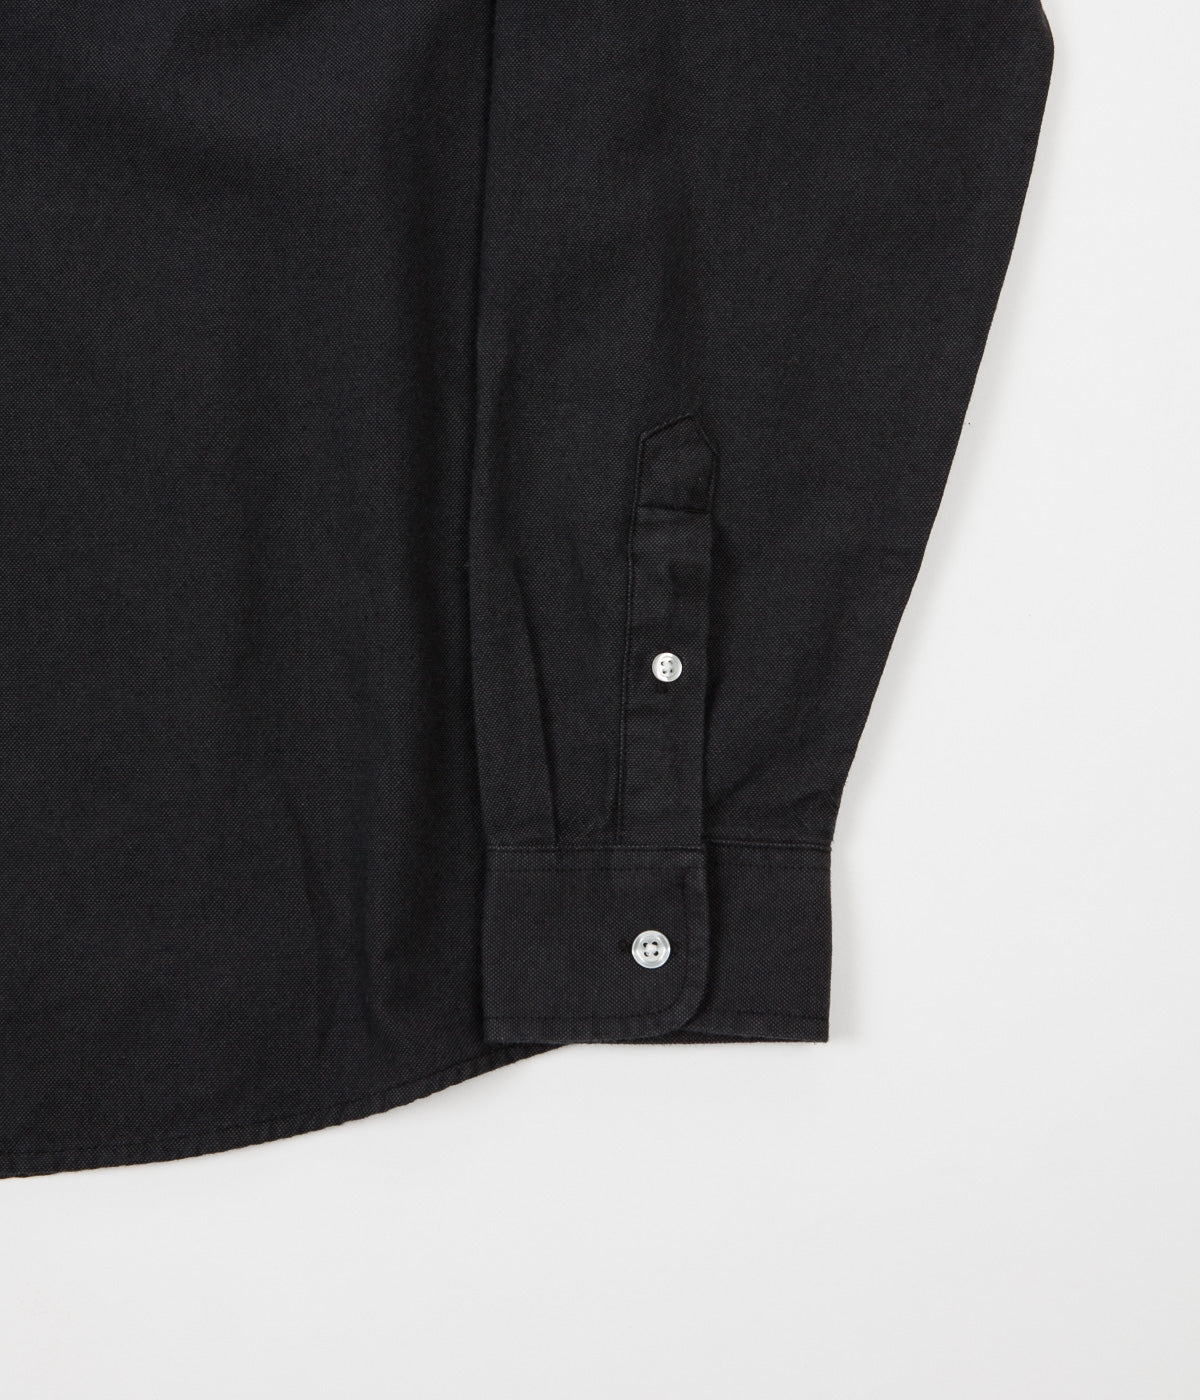 Carhartt Dalton Shirt - Black / Blacksmith | Flatspot